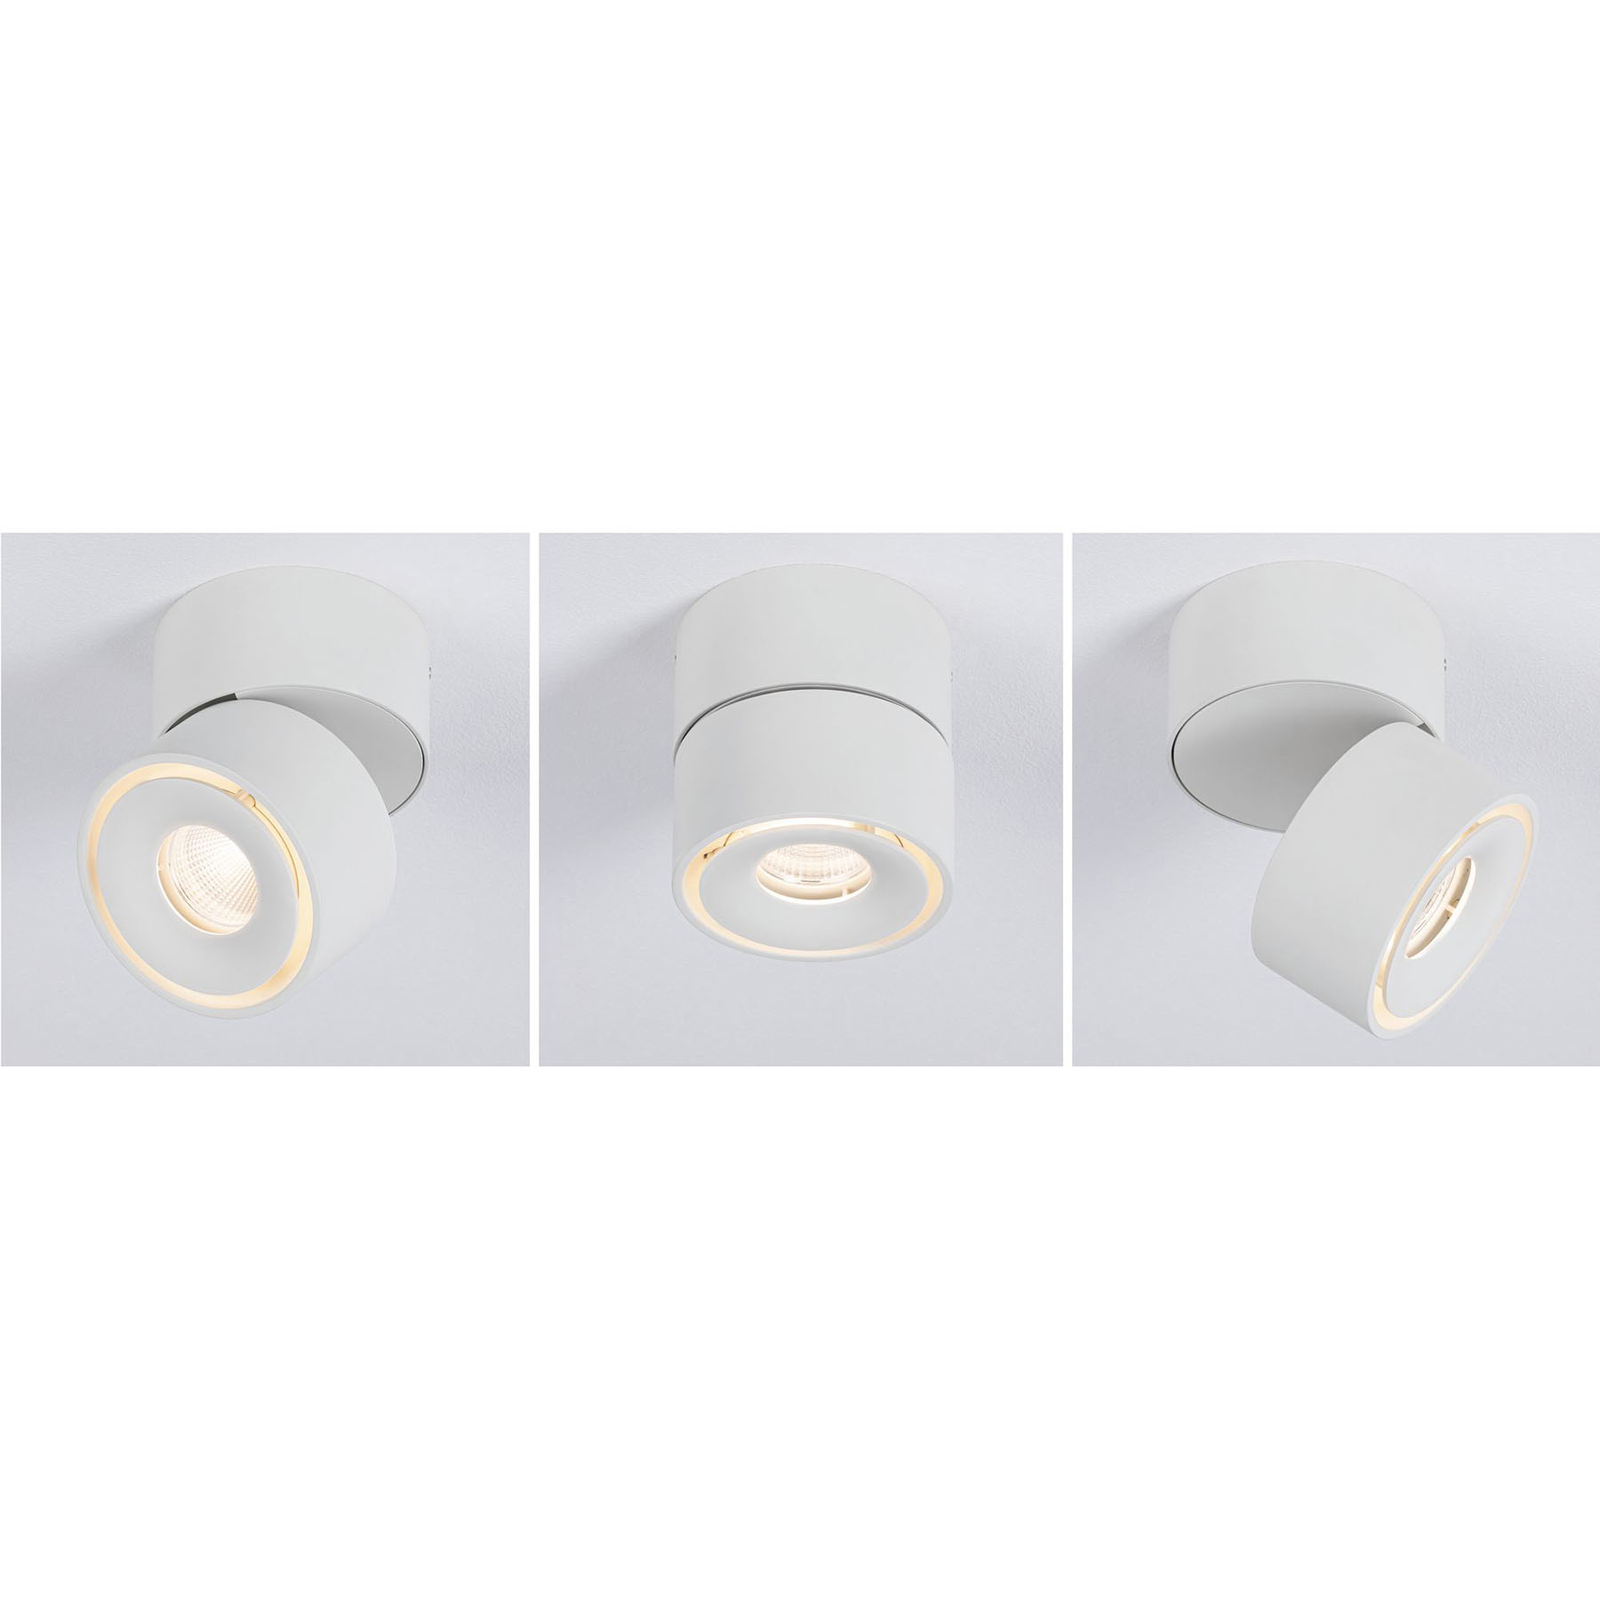 Paulmann Spircle LED downlight matt white